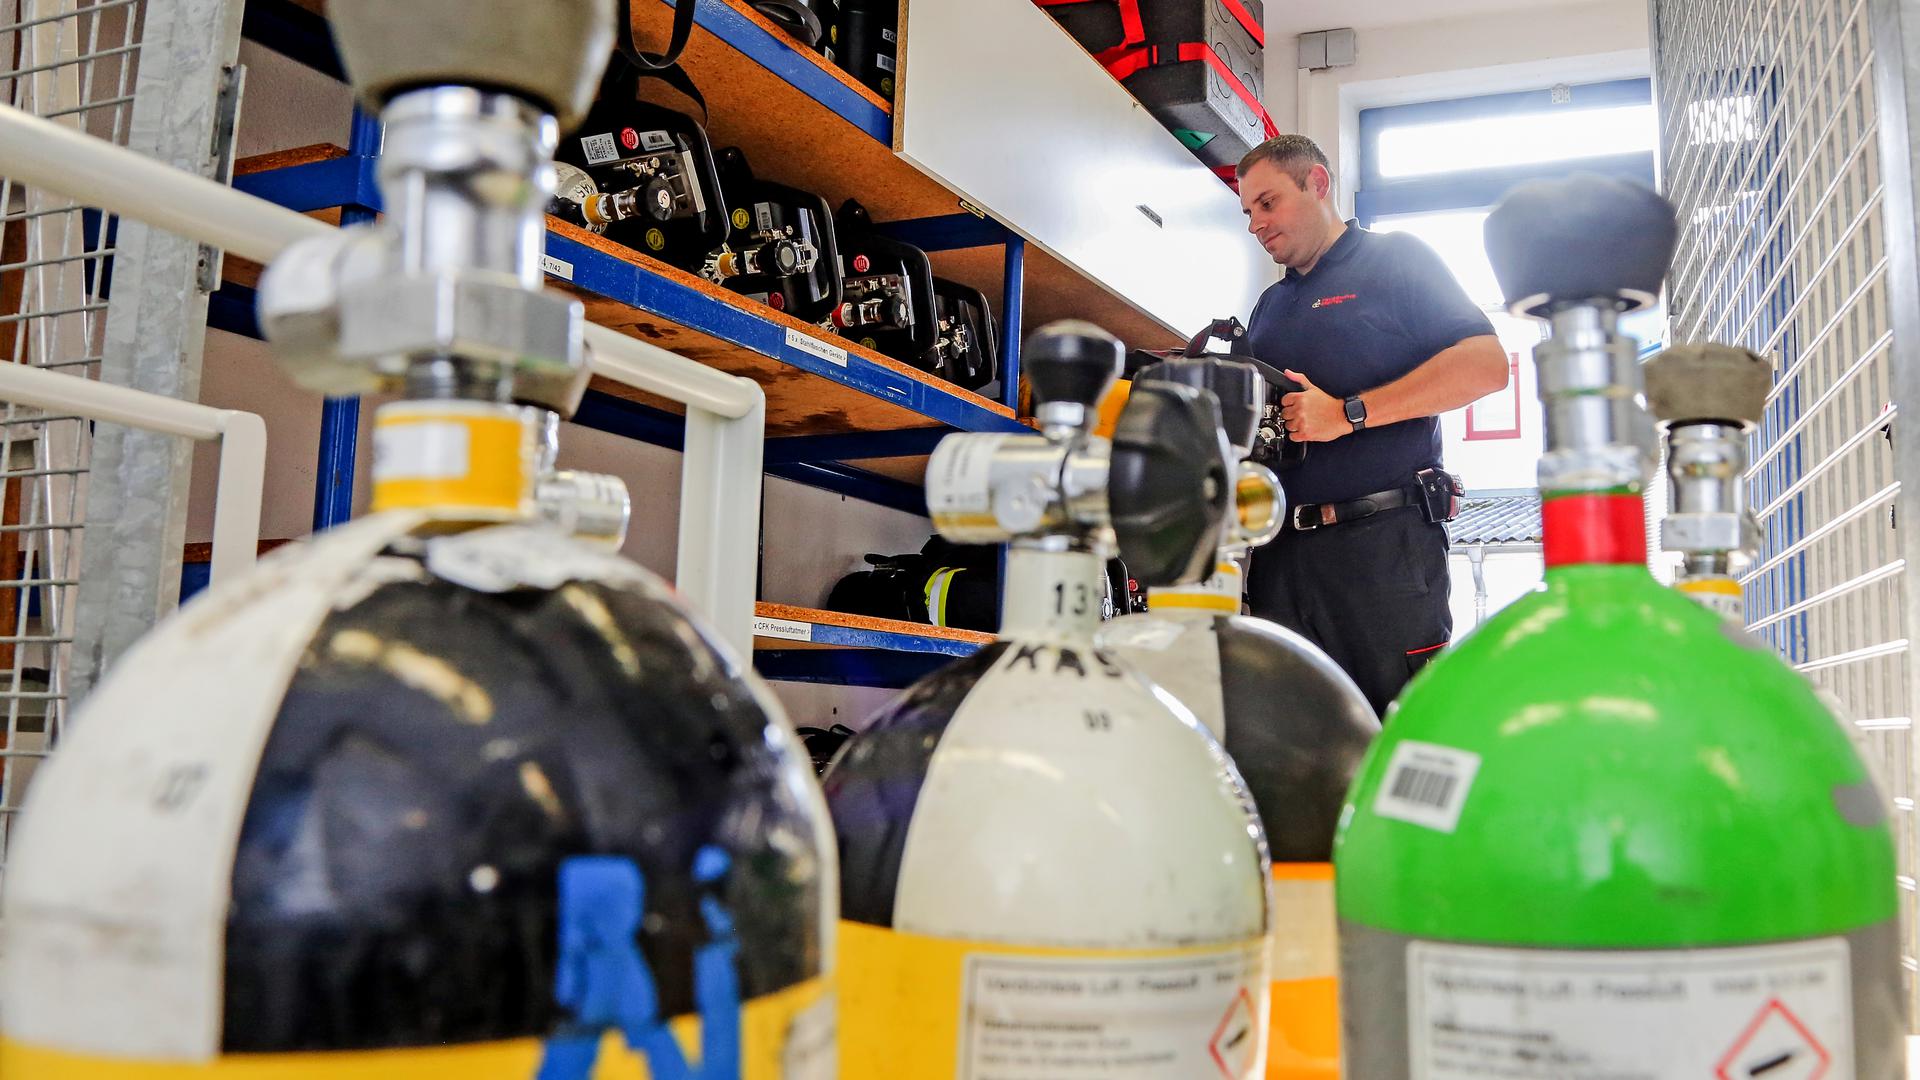 Brettens Feuerwehr-Kommandant Oliver Haas zeigt, wie in der zentralen Werkstatt der Feuerwehr Atemschutzgeräte und Atemschutzmasken gelagert werden.